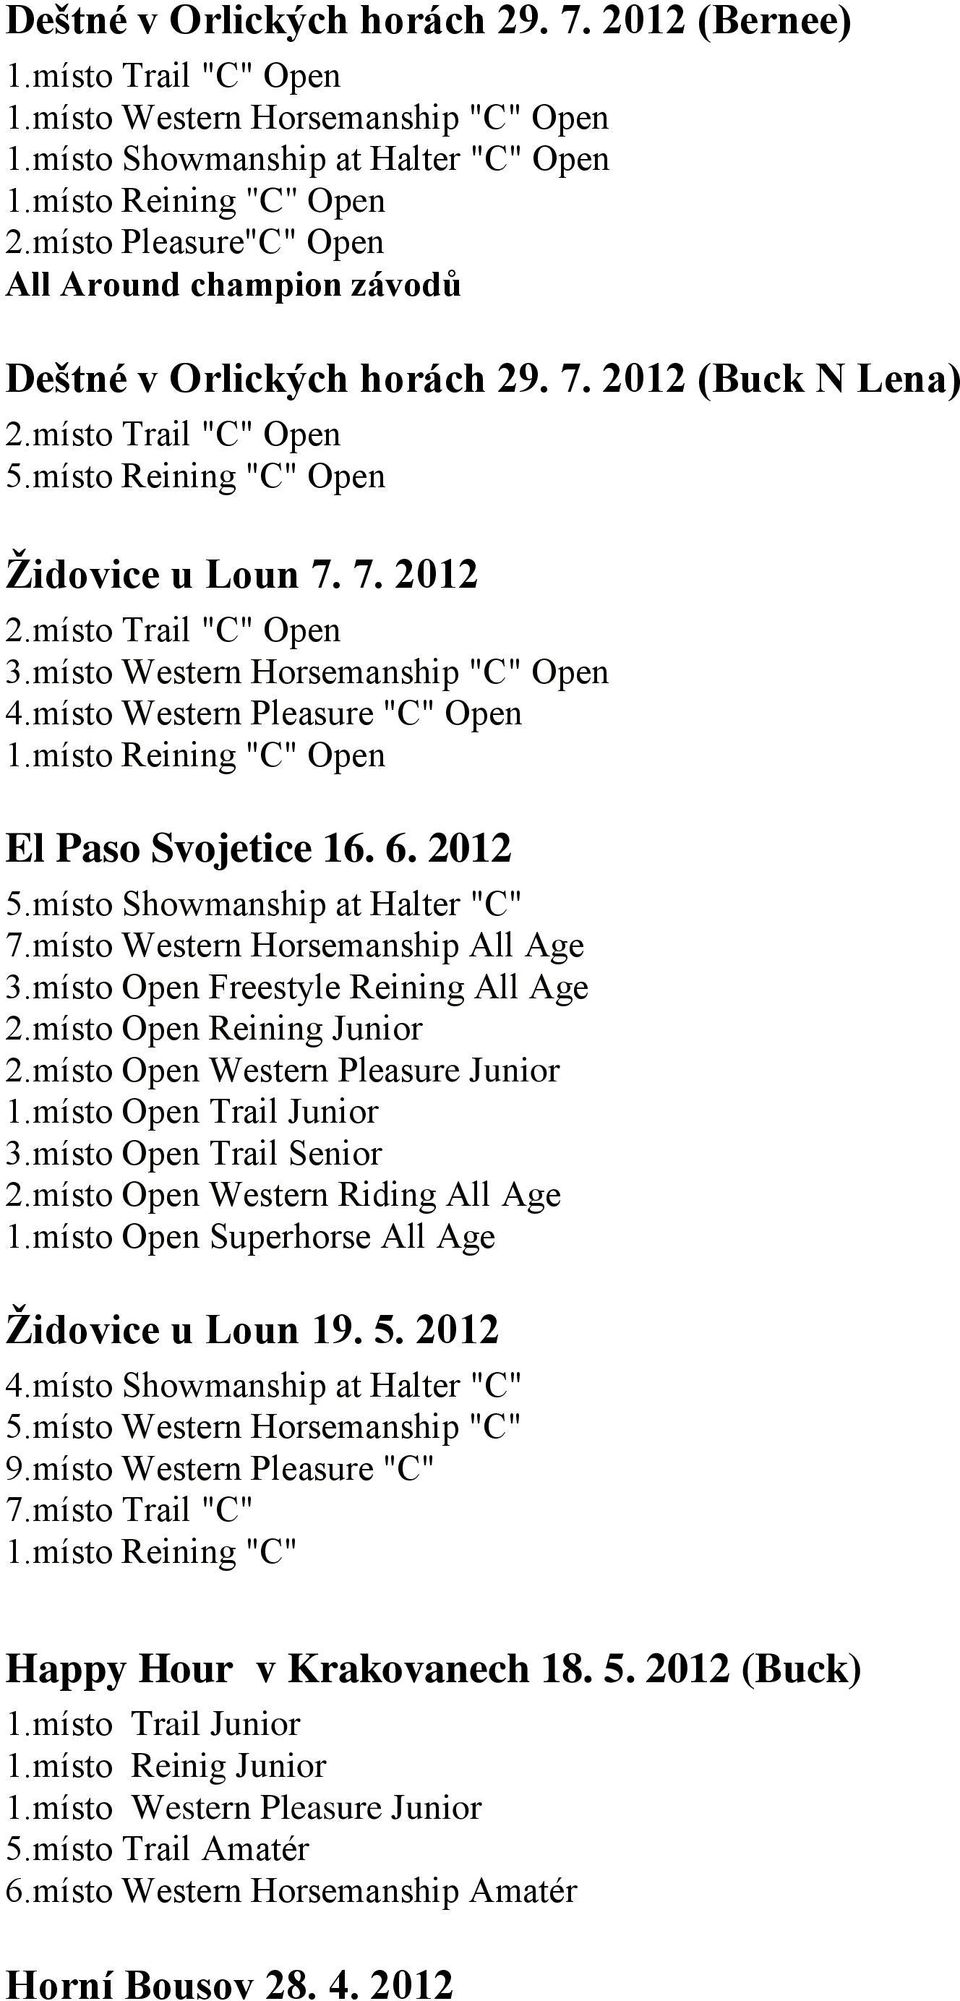 místo Trail "C" Open 3.místo Western Horsemanship "C" Open 4.místo Western Pleasure "C" Open 1.místo Reining "C" Open El Paso Svojetice 16. 6. 2012 5.místo Showmanship at Halter "C" 7.